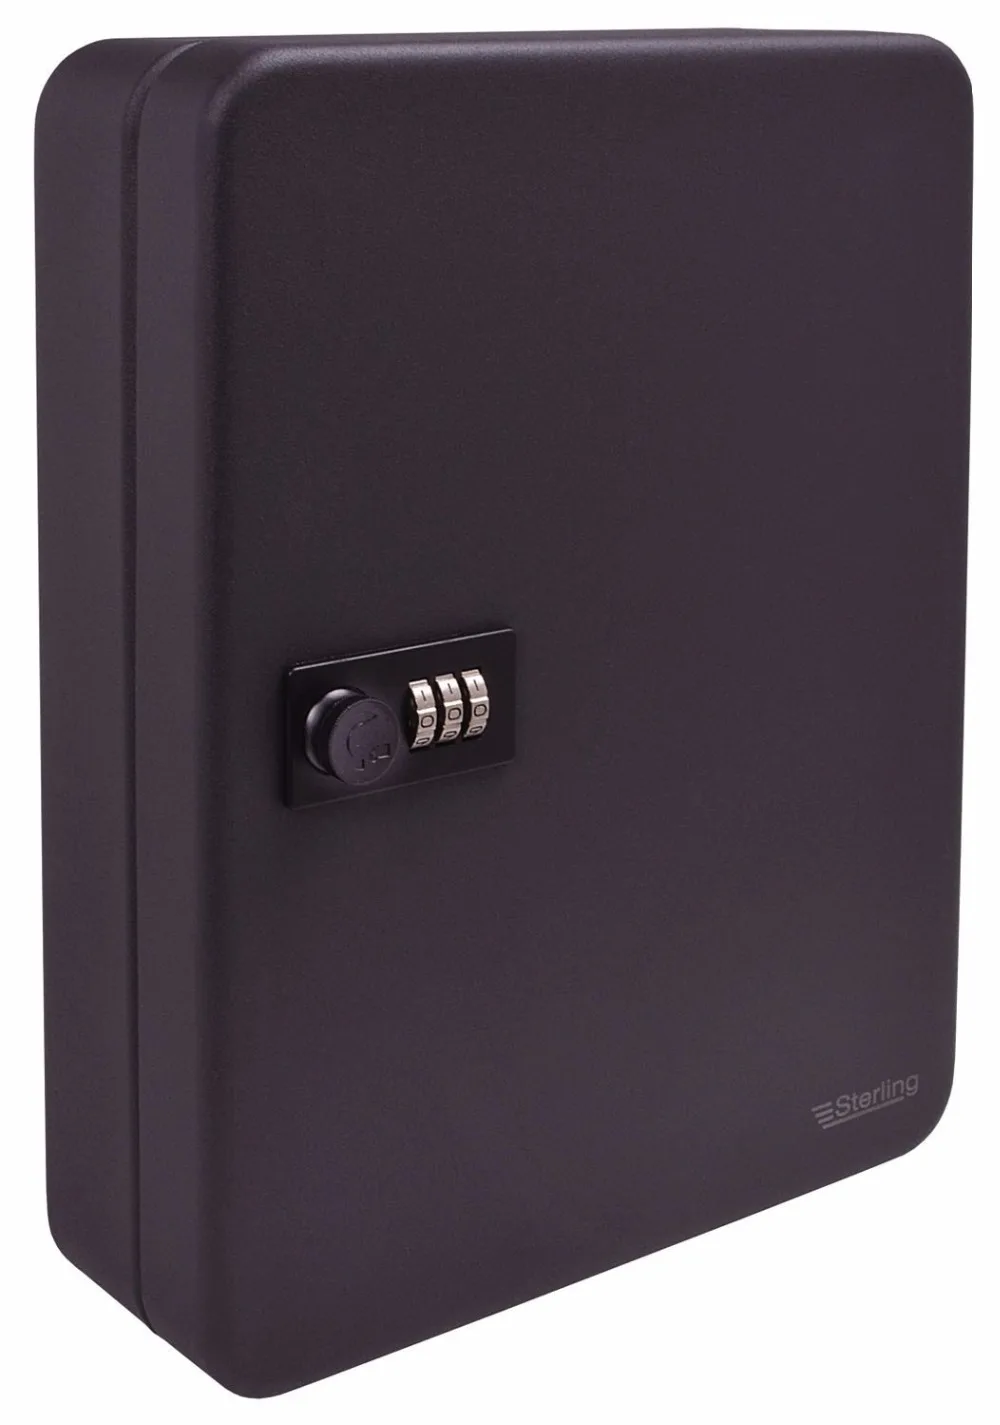 Ключ Шкатулка-комод 36 теги Fobs настенный запираемый безопасности металлический шкаф безопасный для домашнего имущества Управление компании